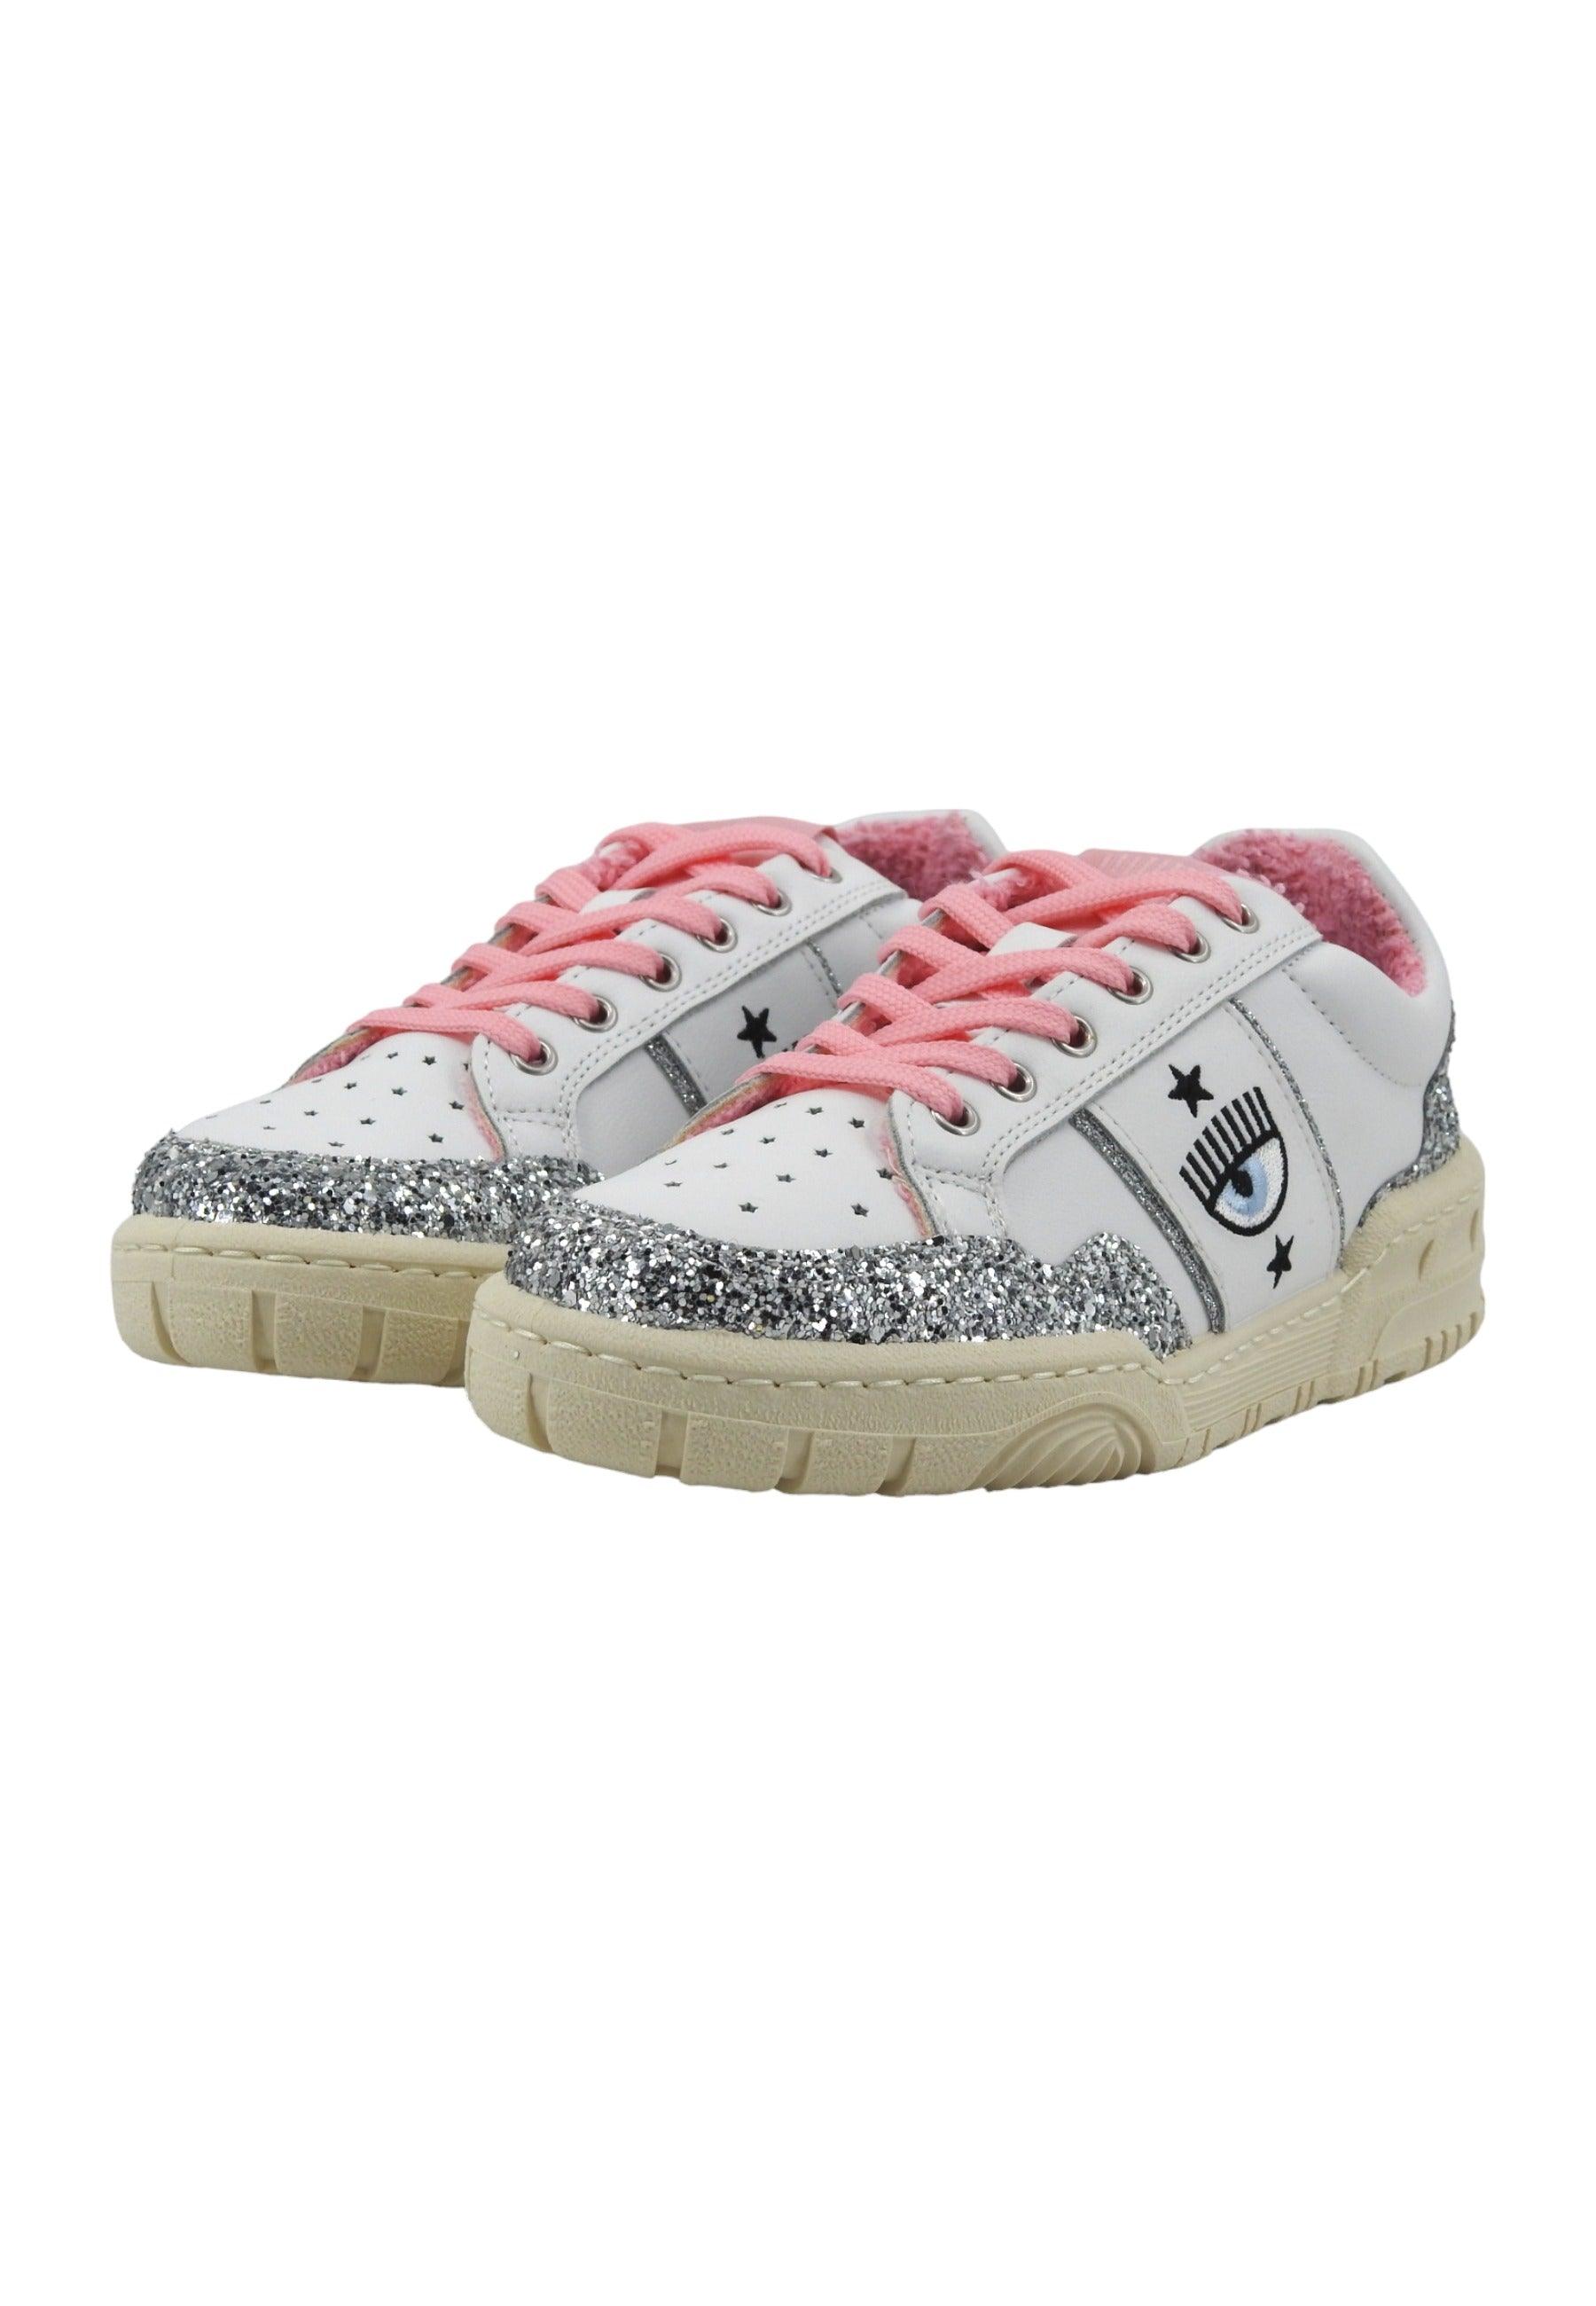 CHIARA FERRAGNI Sneaker Donna White Silver Pink CF3206-262 - Sandrini Calzature e Abbigliamento